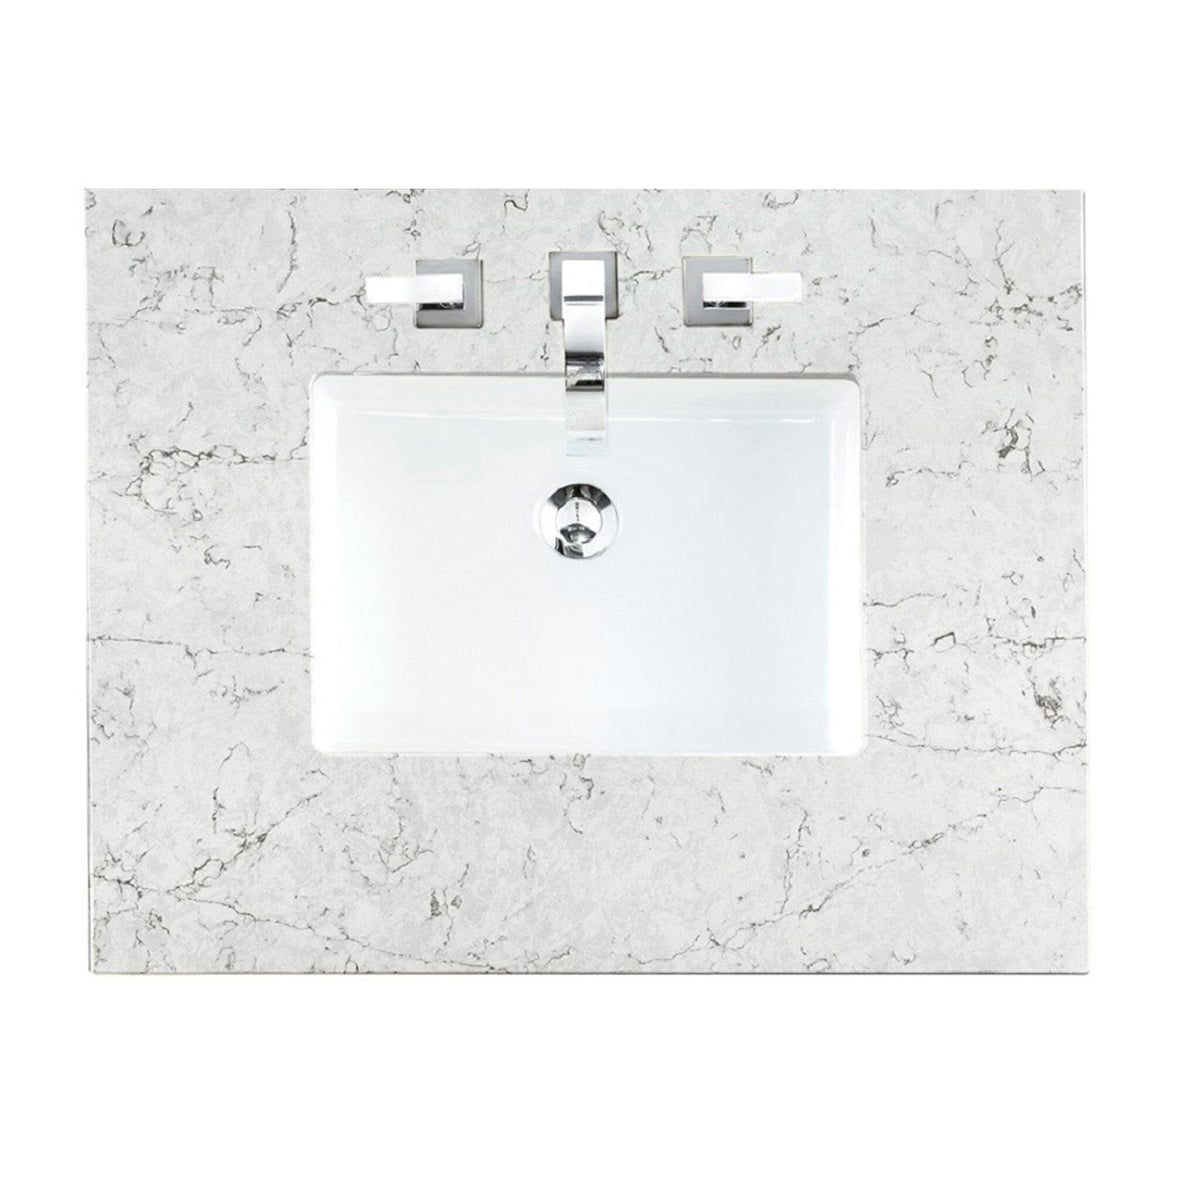 90" Addison Mid-Century Acacia Double Sink Bathroom Vanity Deluxe Set with 3 cm Eternal Jasmine Pearl Quartz Top